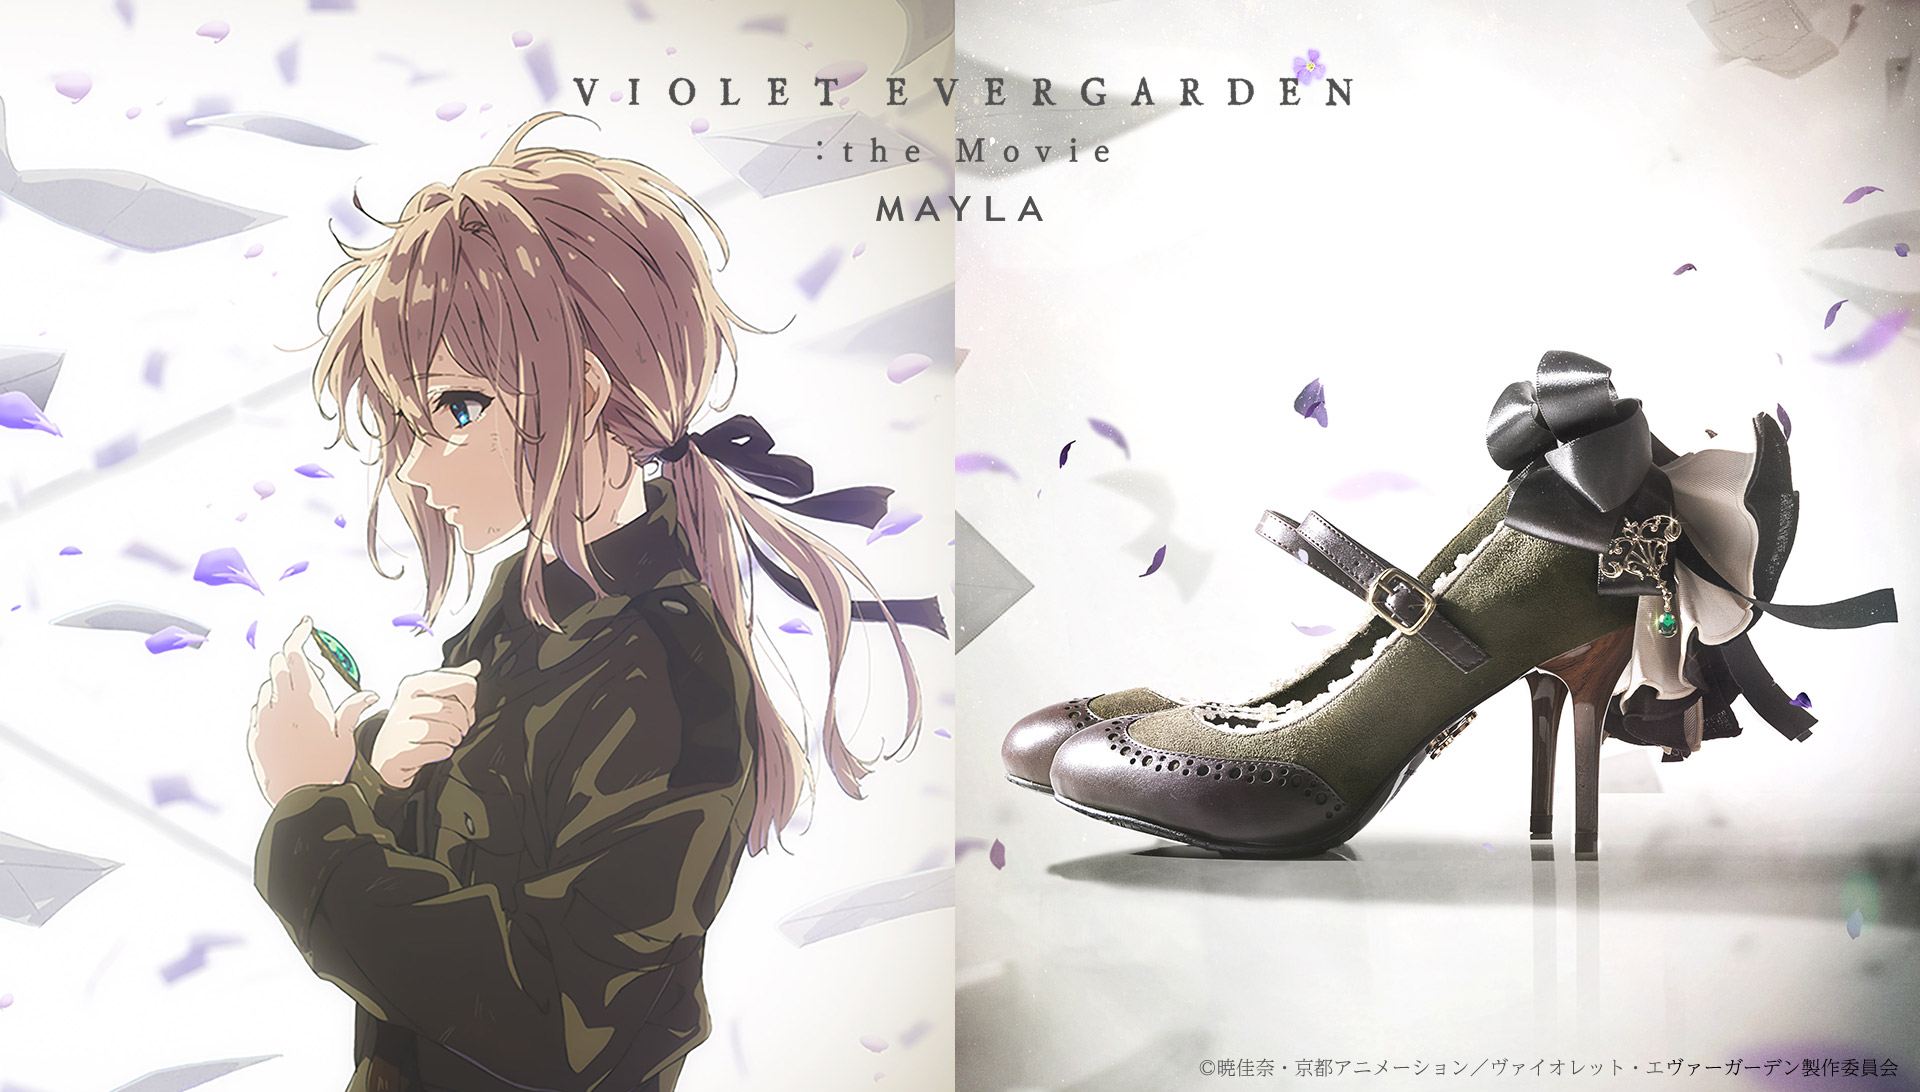 MAYLA / Violet Evergarden - MAYLA